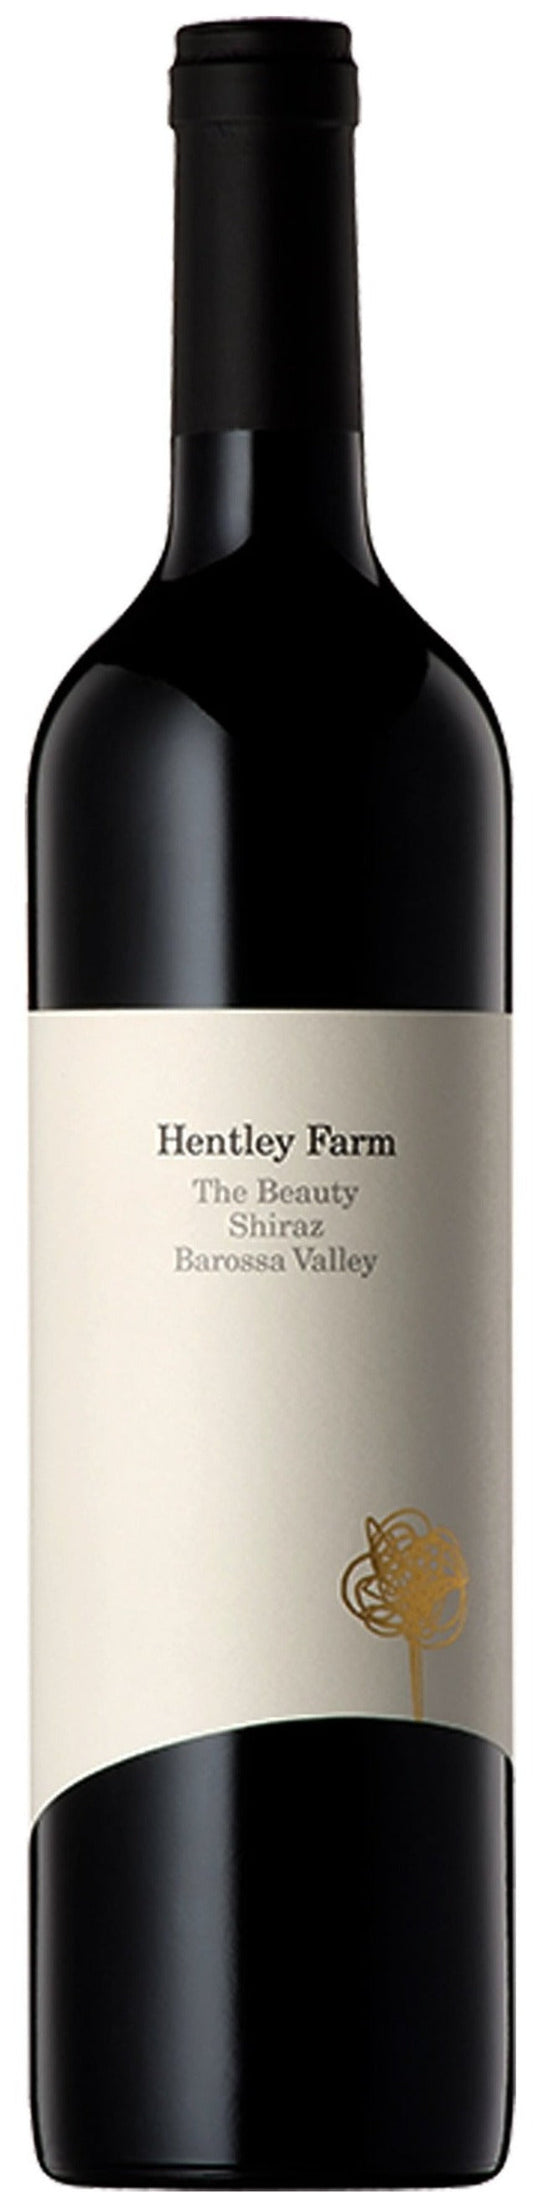 Hentley Farm The Beauty Barossa Valley Shiraz 2021